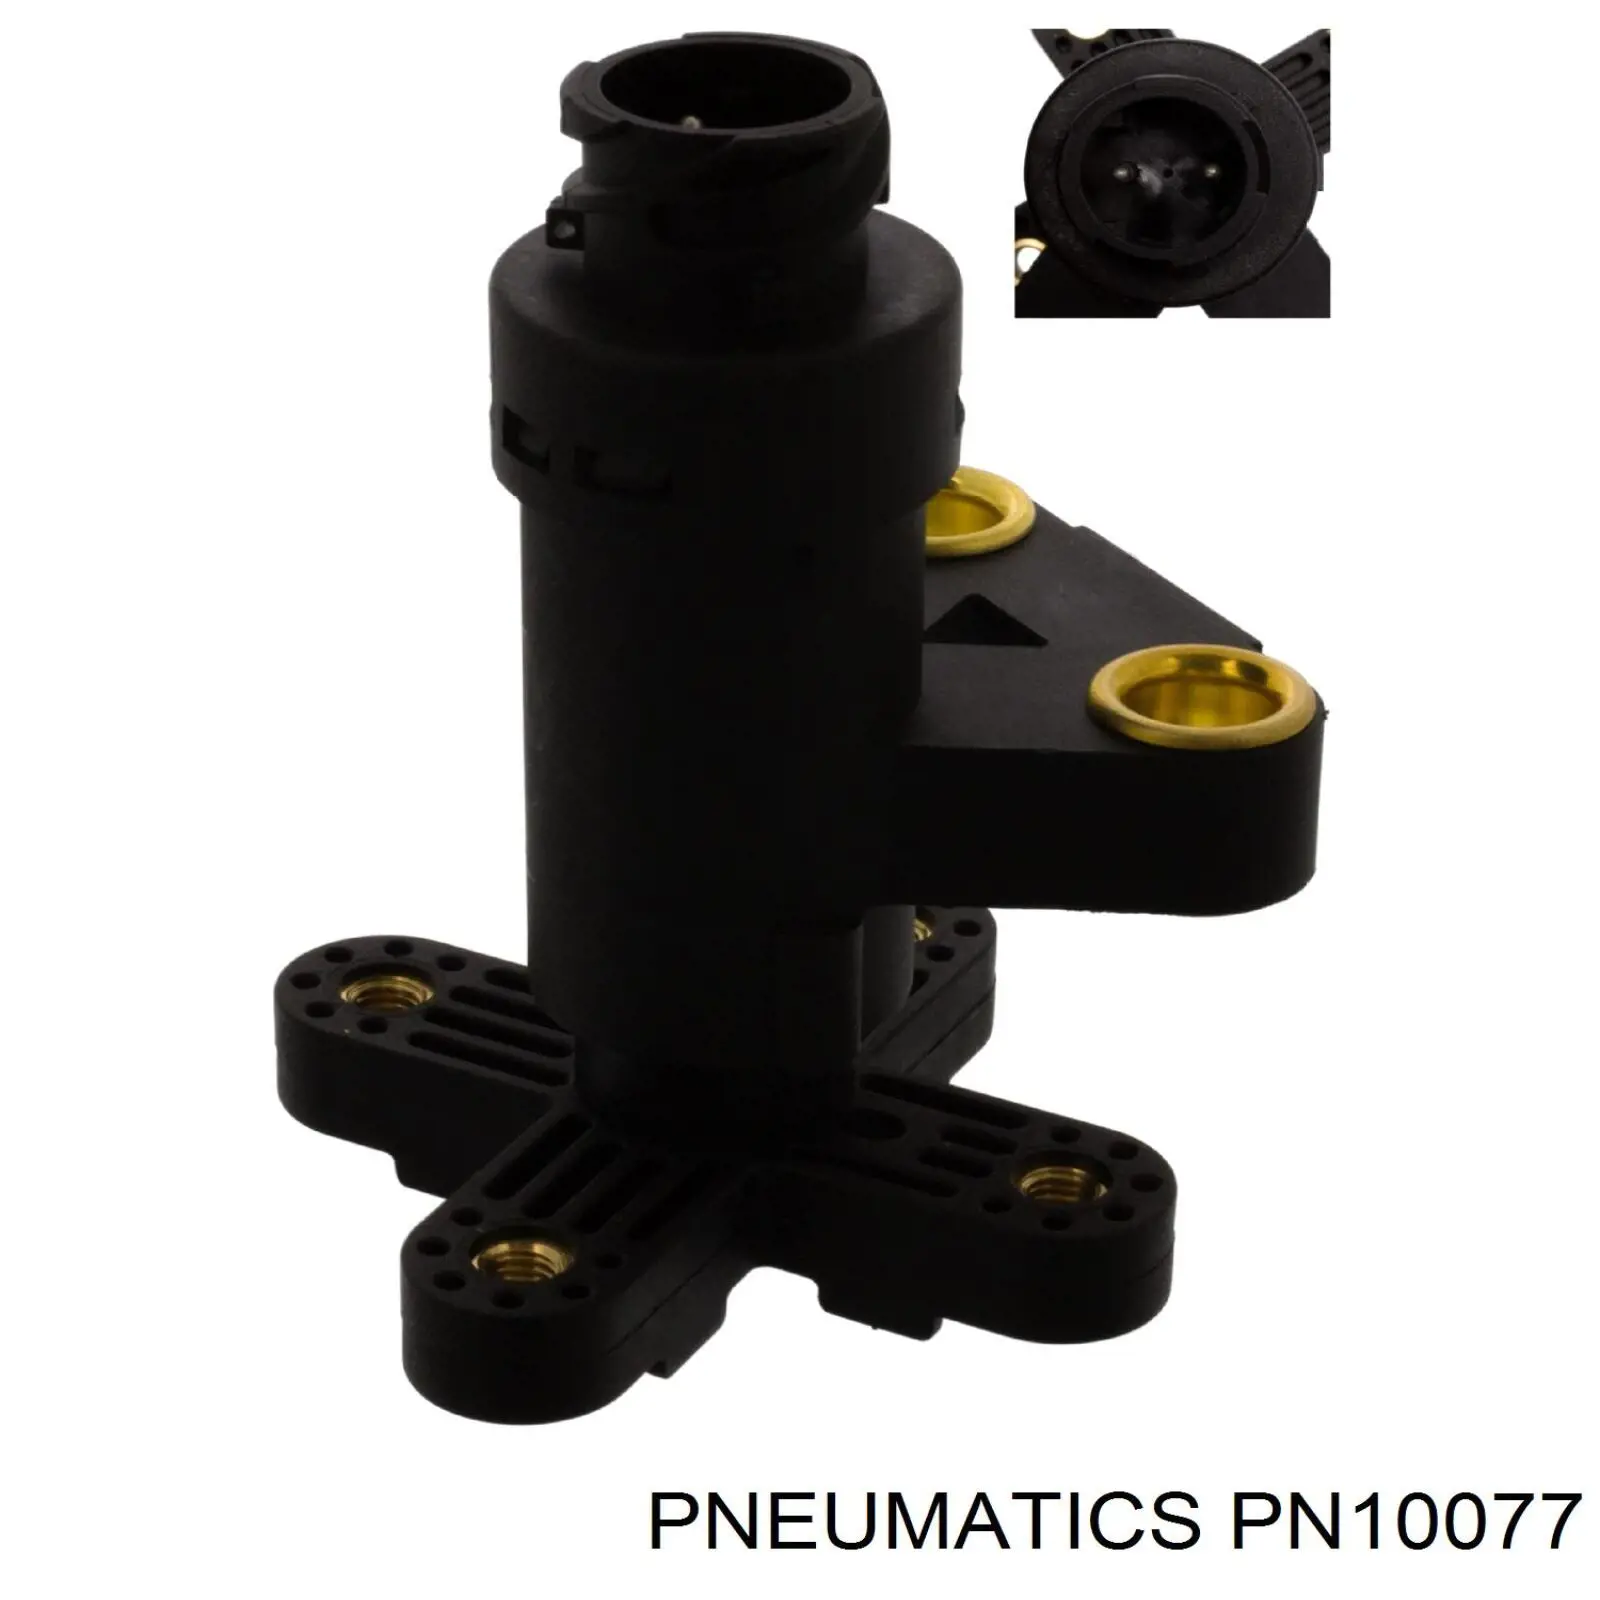 PN10077 Pneumatics sensor, nivel de suspensión neumática, trasero